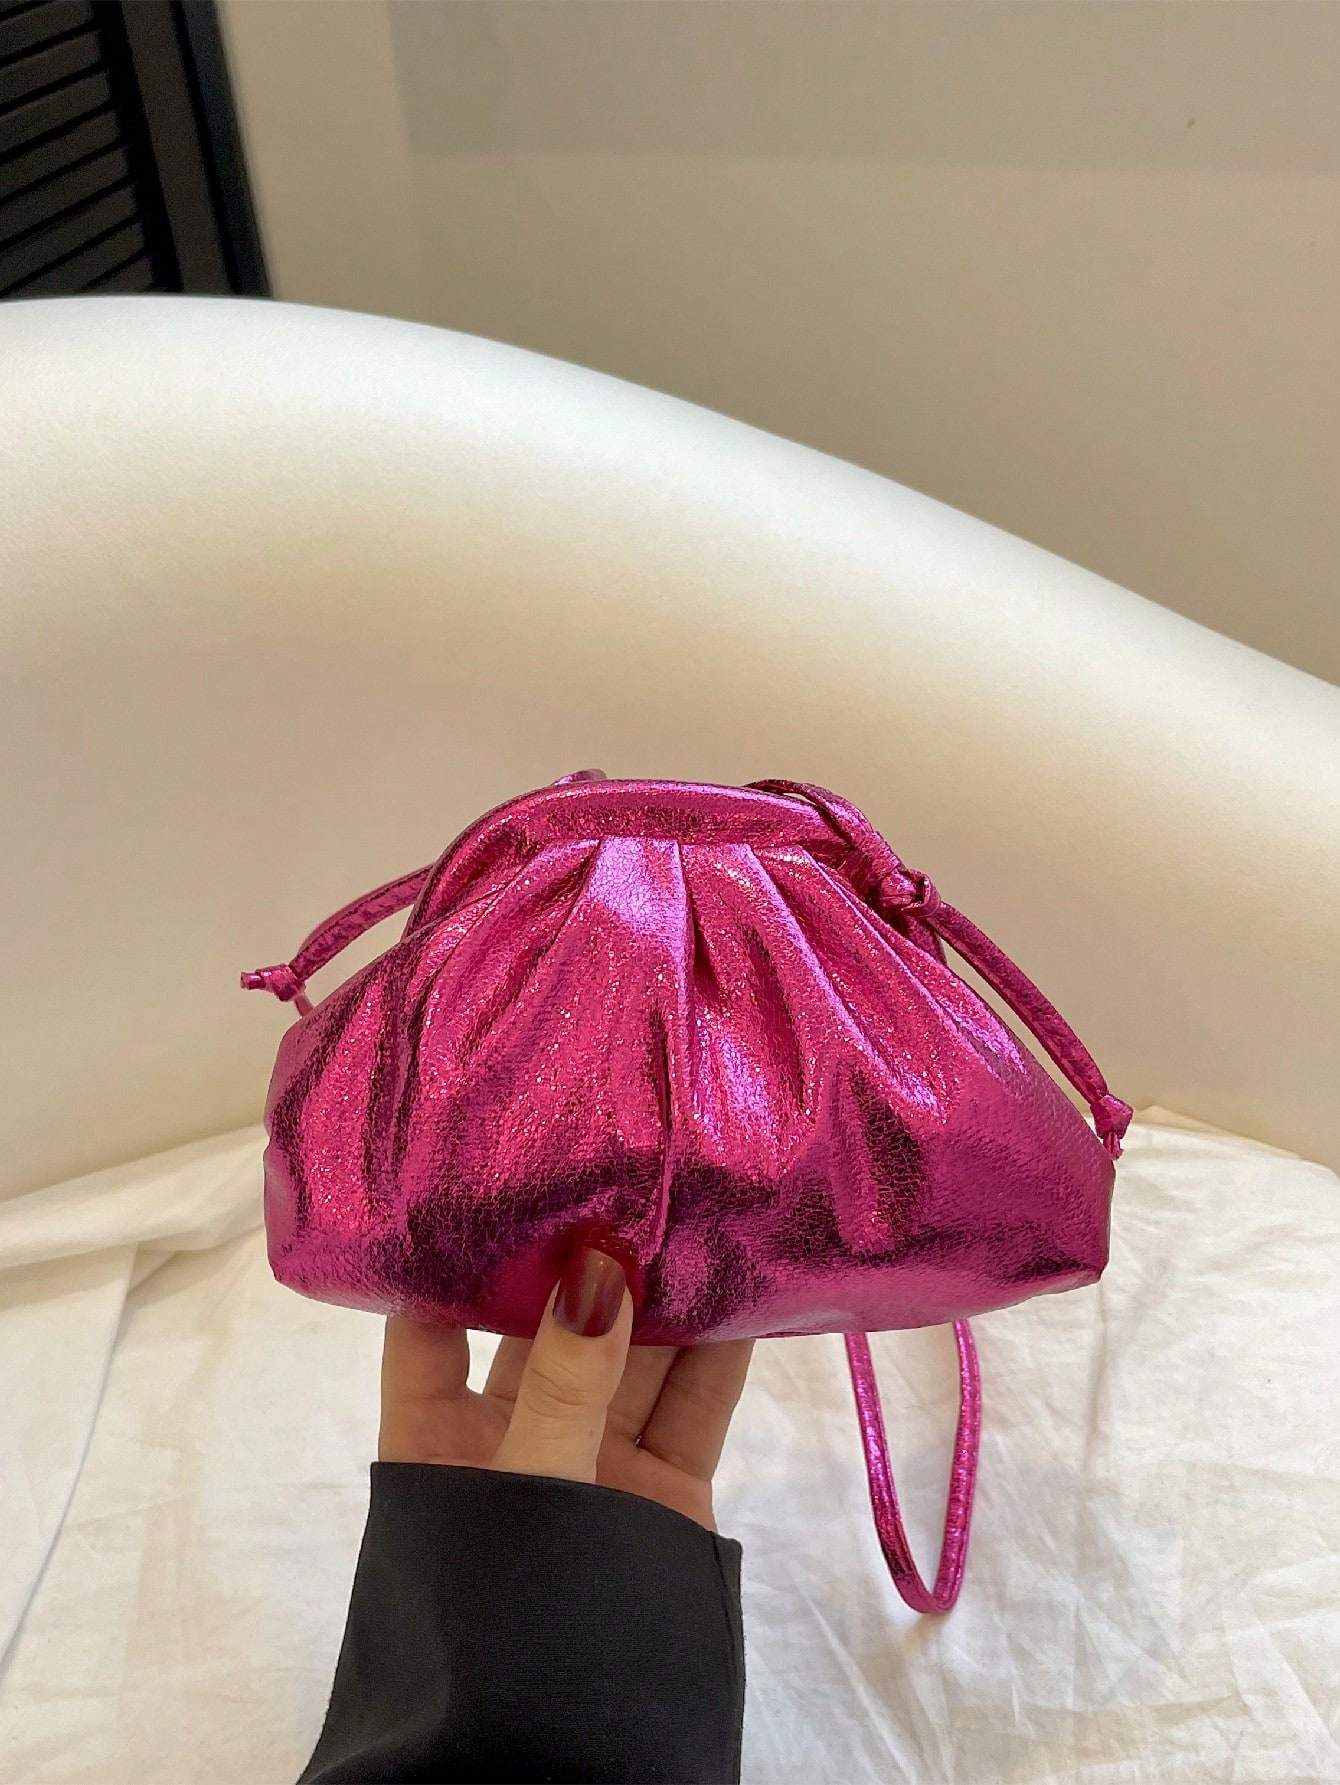 Мини-сумка со складками Ярко-розовый металлик Полиуретан в стиле фанк, ярко-розовый маленькая поясная сумка неоново розовая вечерняя сумка в стиле фанк с рюшами для женщин абрикос